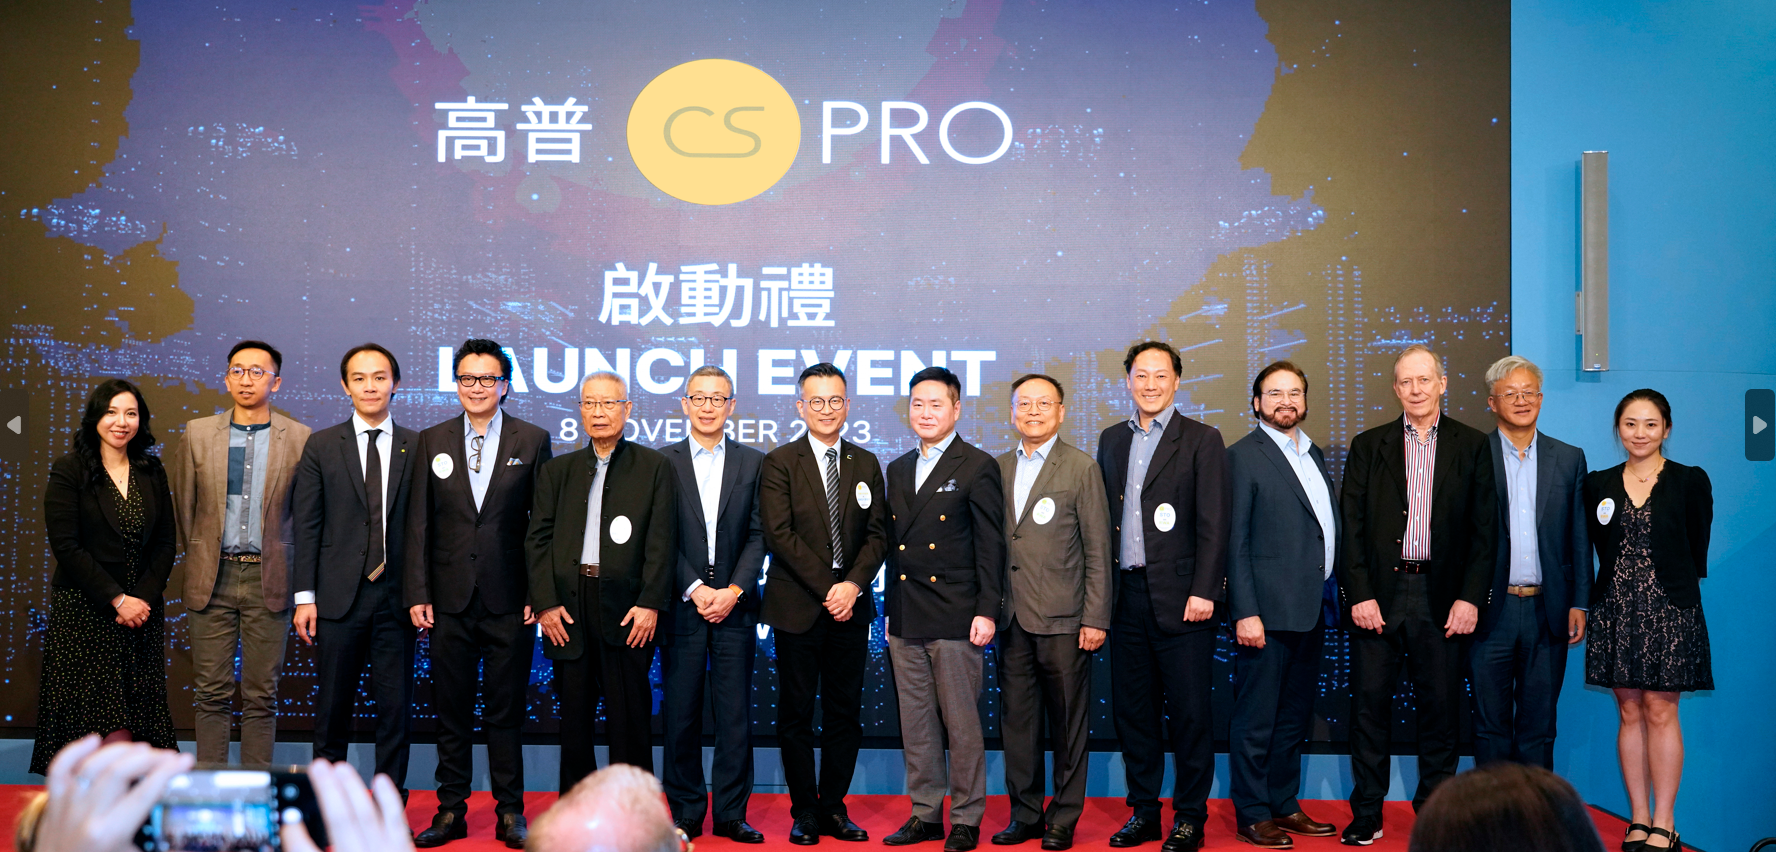 高普 (CSpro) 在香港推出证券型代币发行(STO) 的发行、分销和投资服务，并开始接受潜在证券型代币发行人的申请